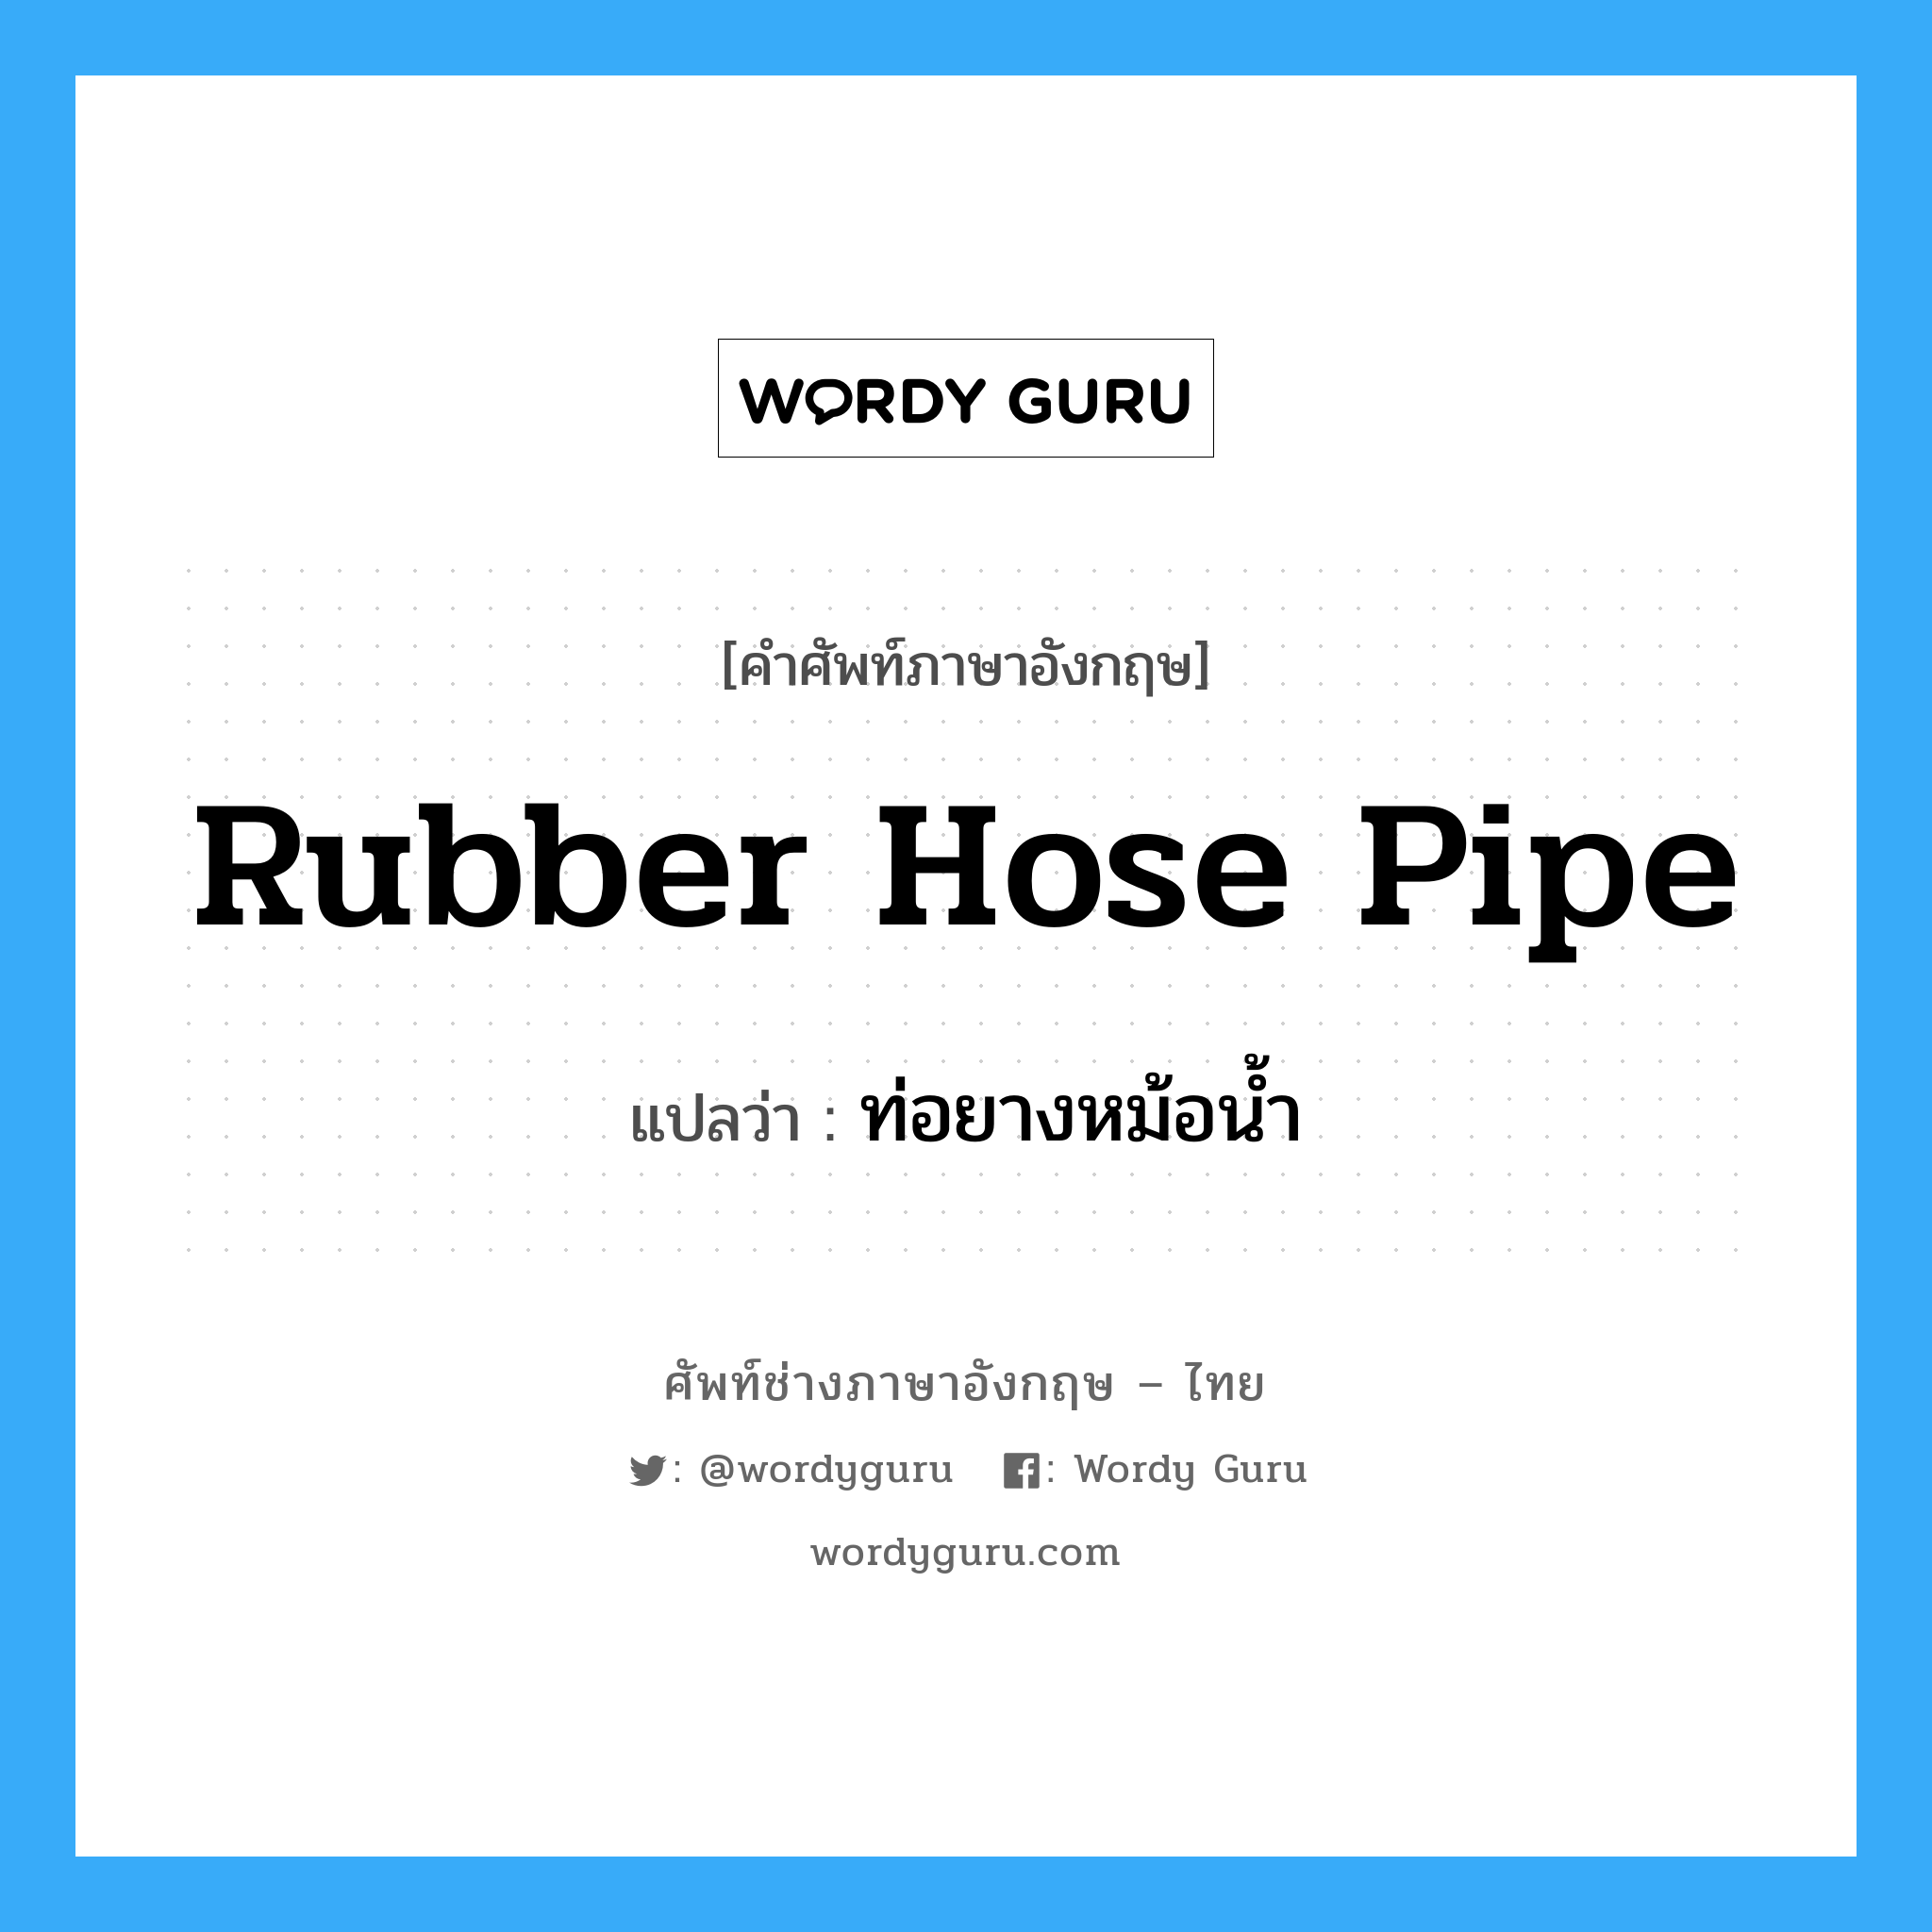 rubber hose pipe แปลว่า?, คำศัพท์ช่างภาษาอังกฤษ - ไทย rubber hose pipe คำศัพท์ภาษาอังกฤษ rubber hose pipe แปลว่า ท่อยางหม้อน้ำ